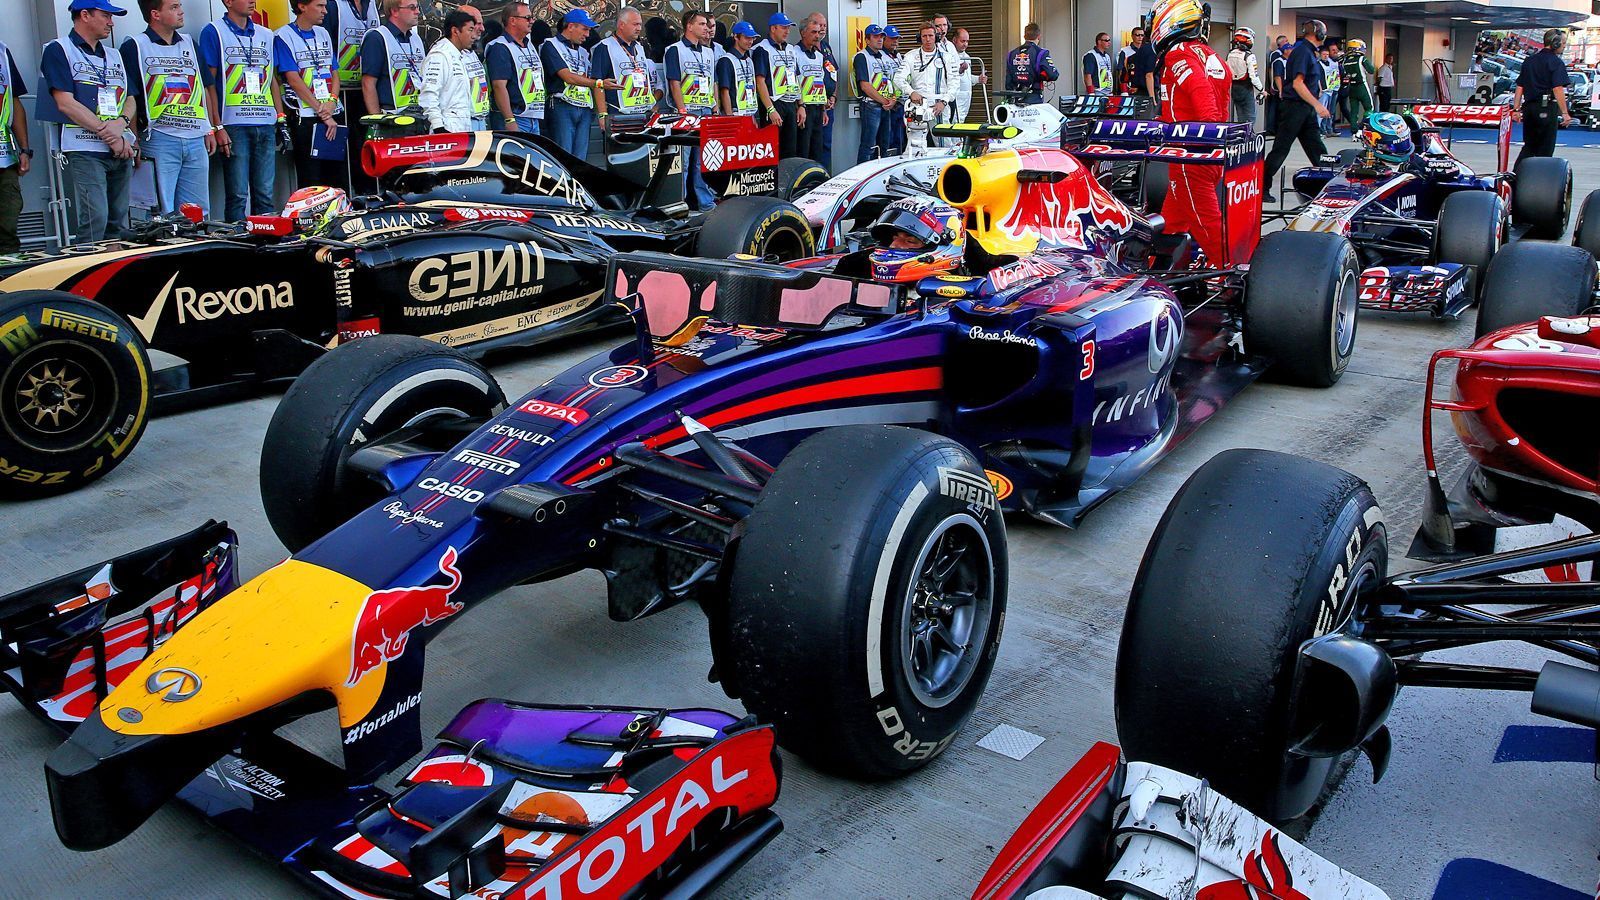 
                <strong>Red Bull RB10 (2014)</strong><br>
                Motor: Renault Energy F1 2014Siege: 3Punkte: 405WM-Rang: 2Fahrer: Daniel Ricciardo & Sebastian Vettel
              